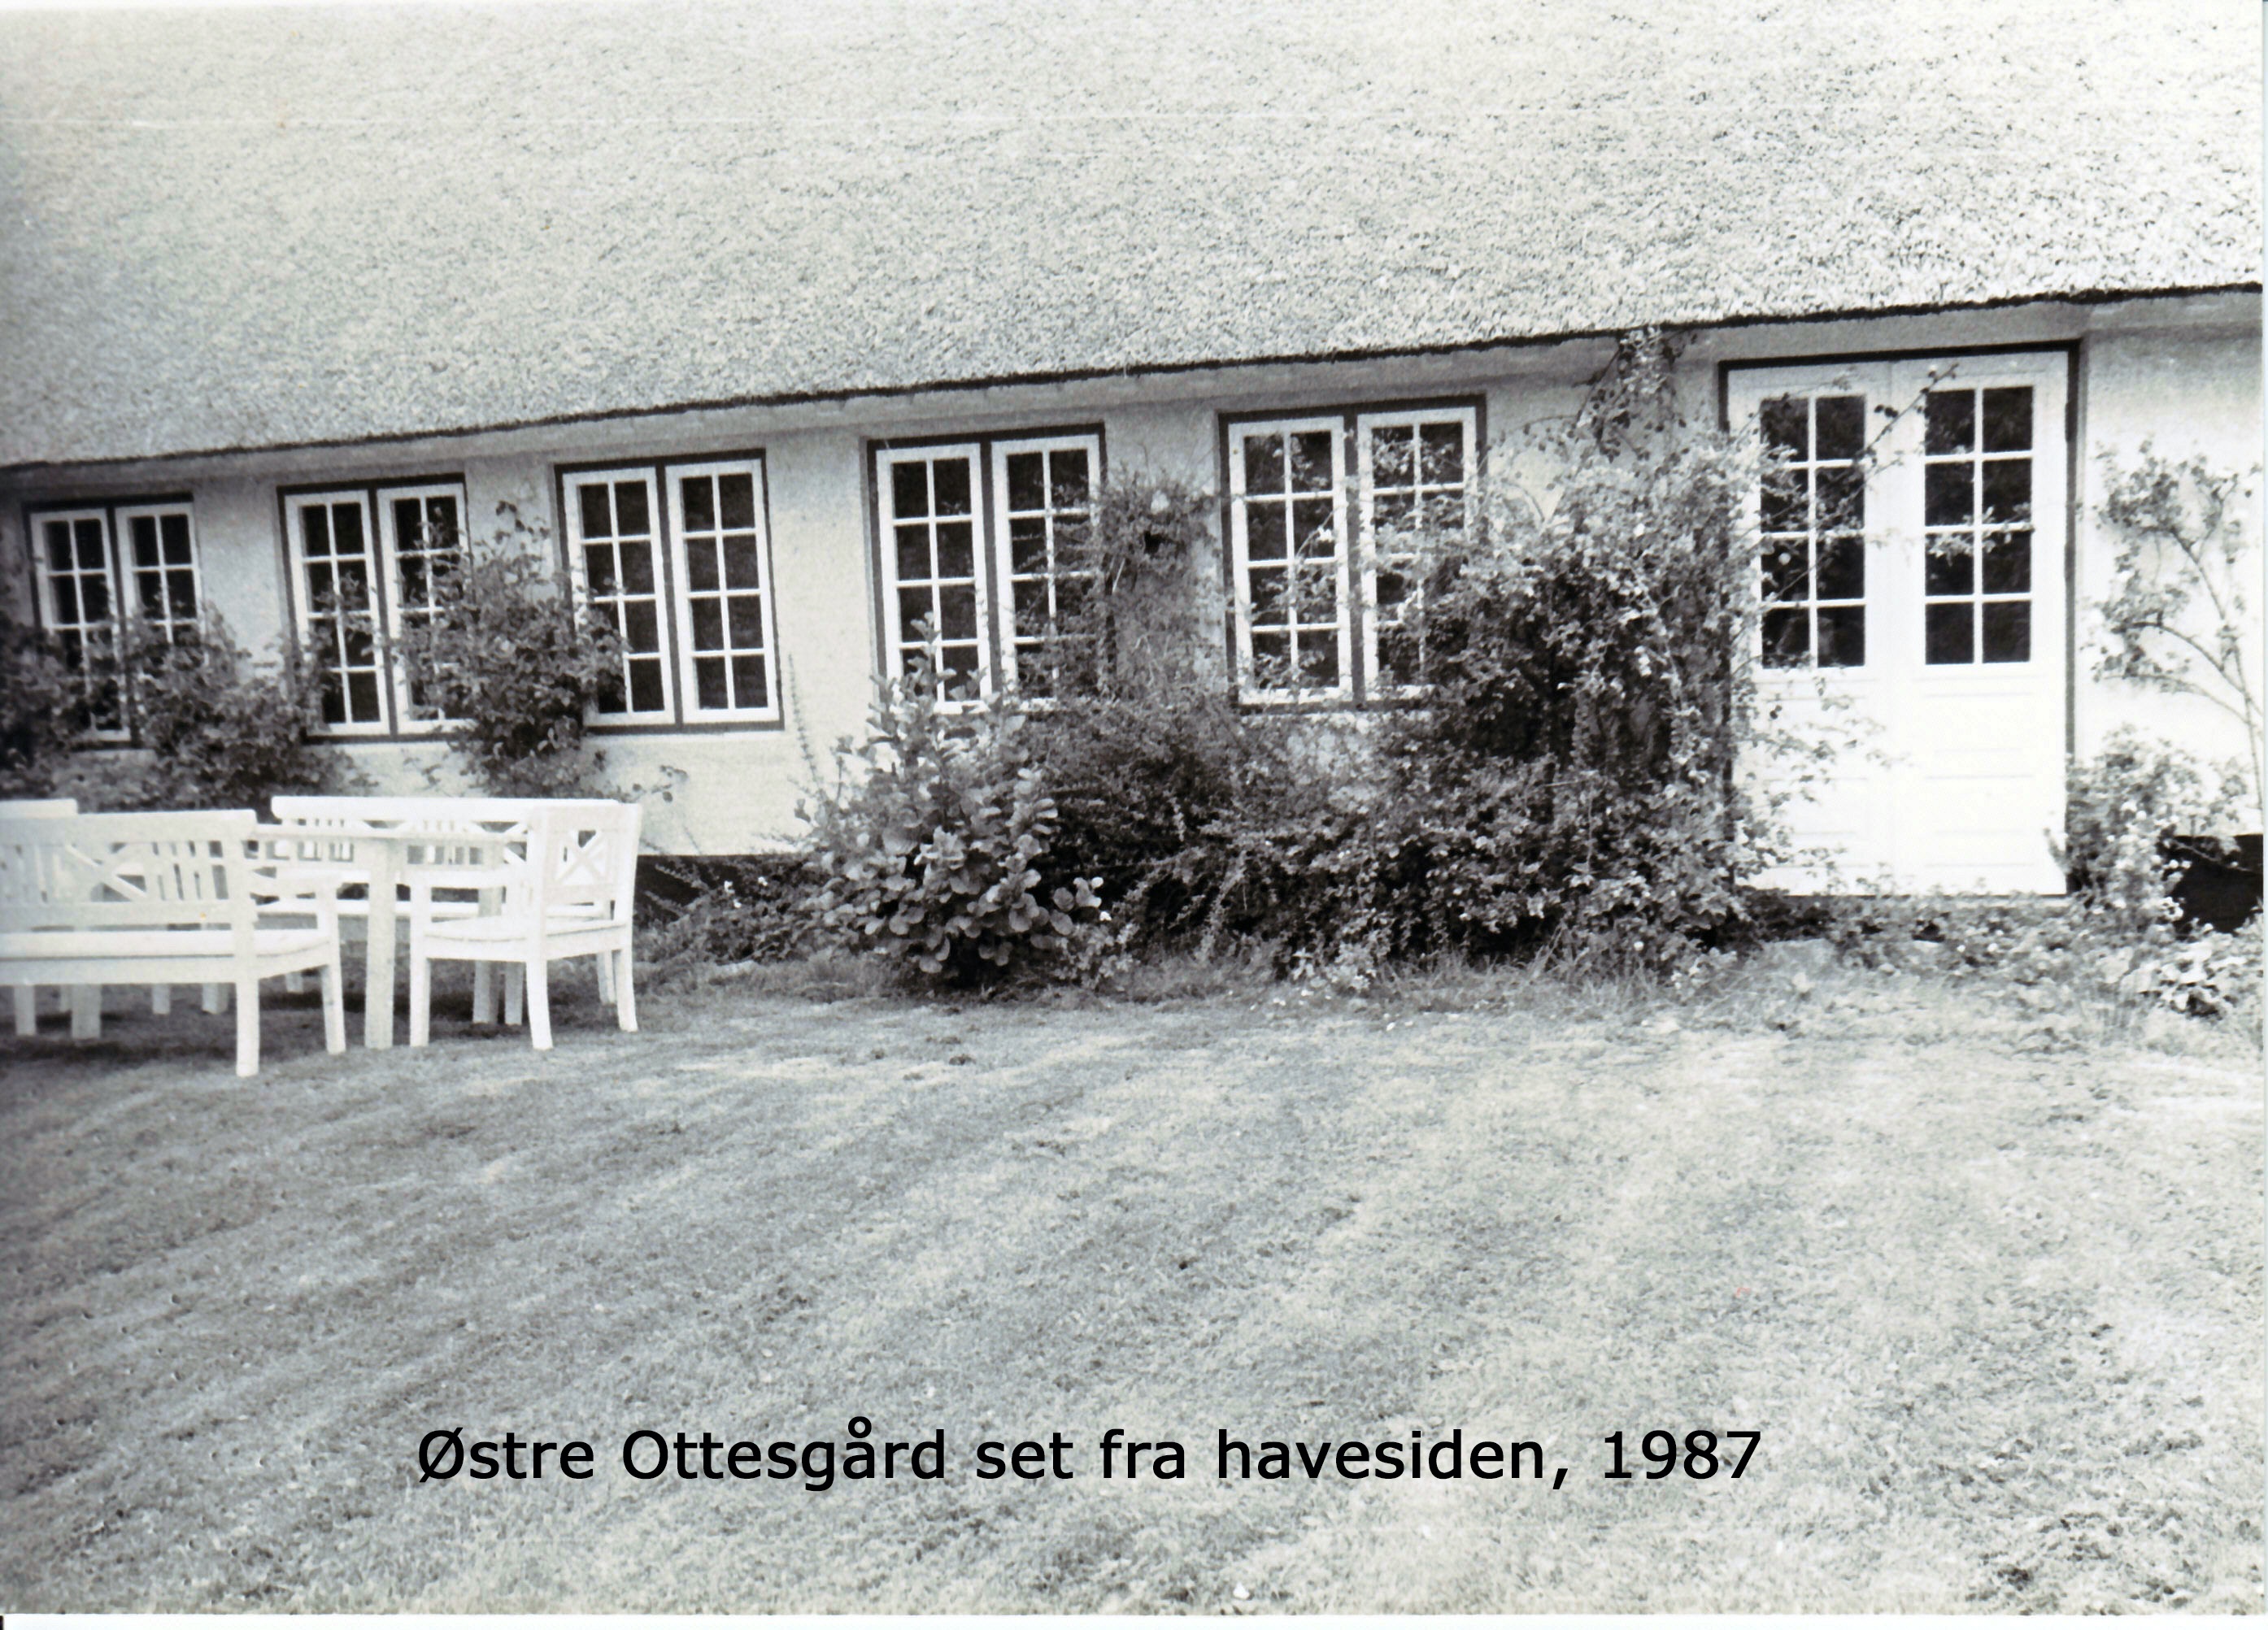 Østre Ottesgård set fra havesiden 1987 